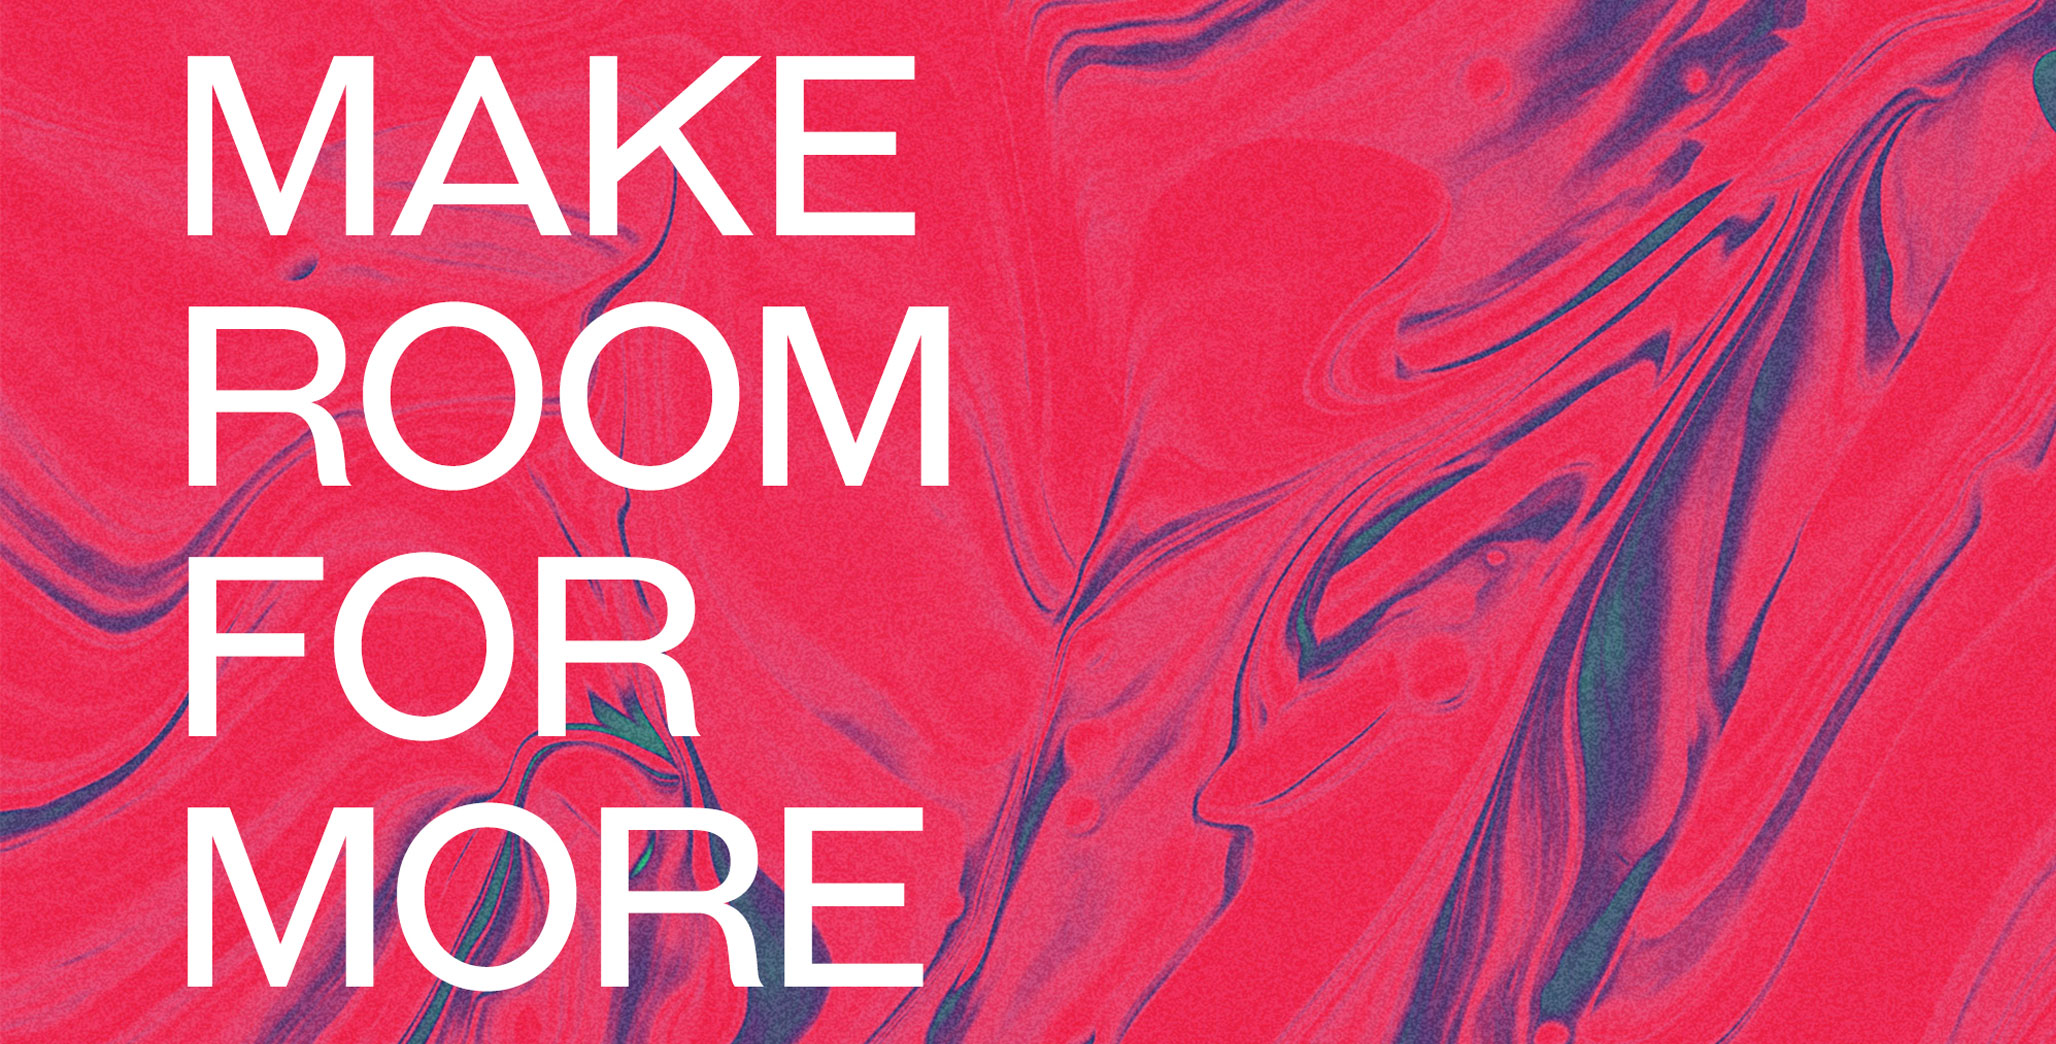 Make-Room-For-More.jpg